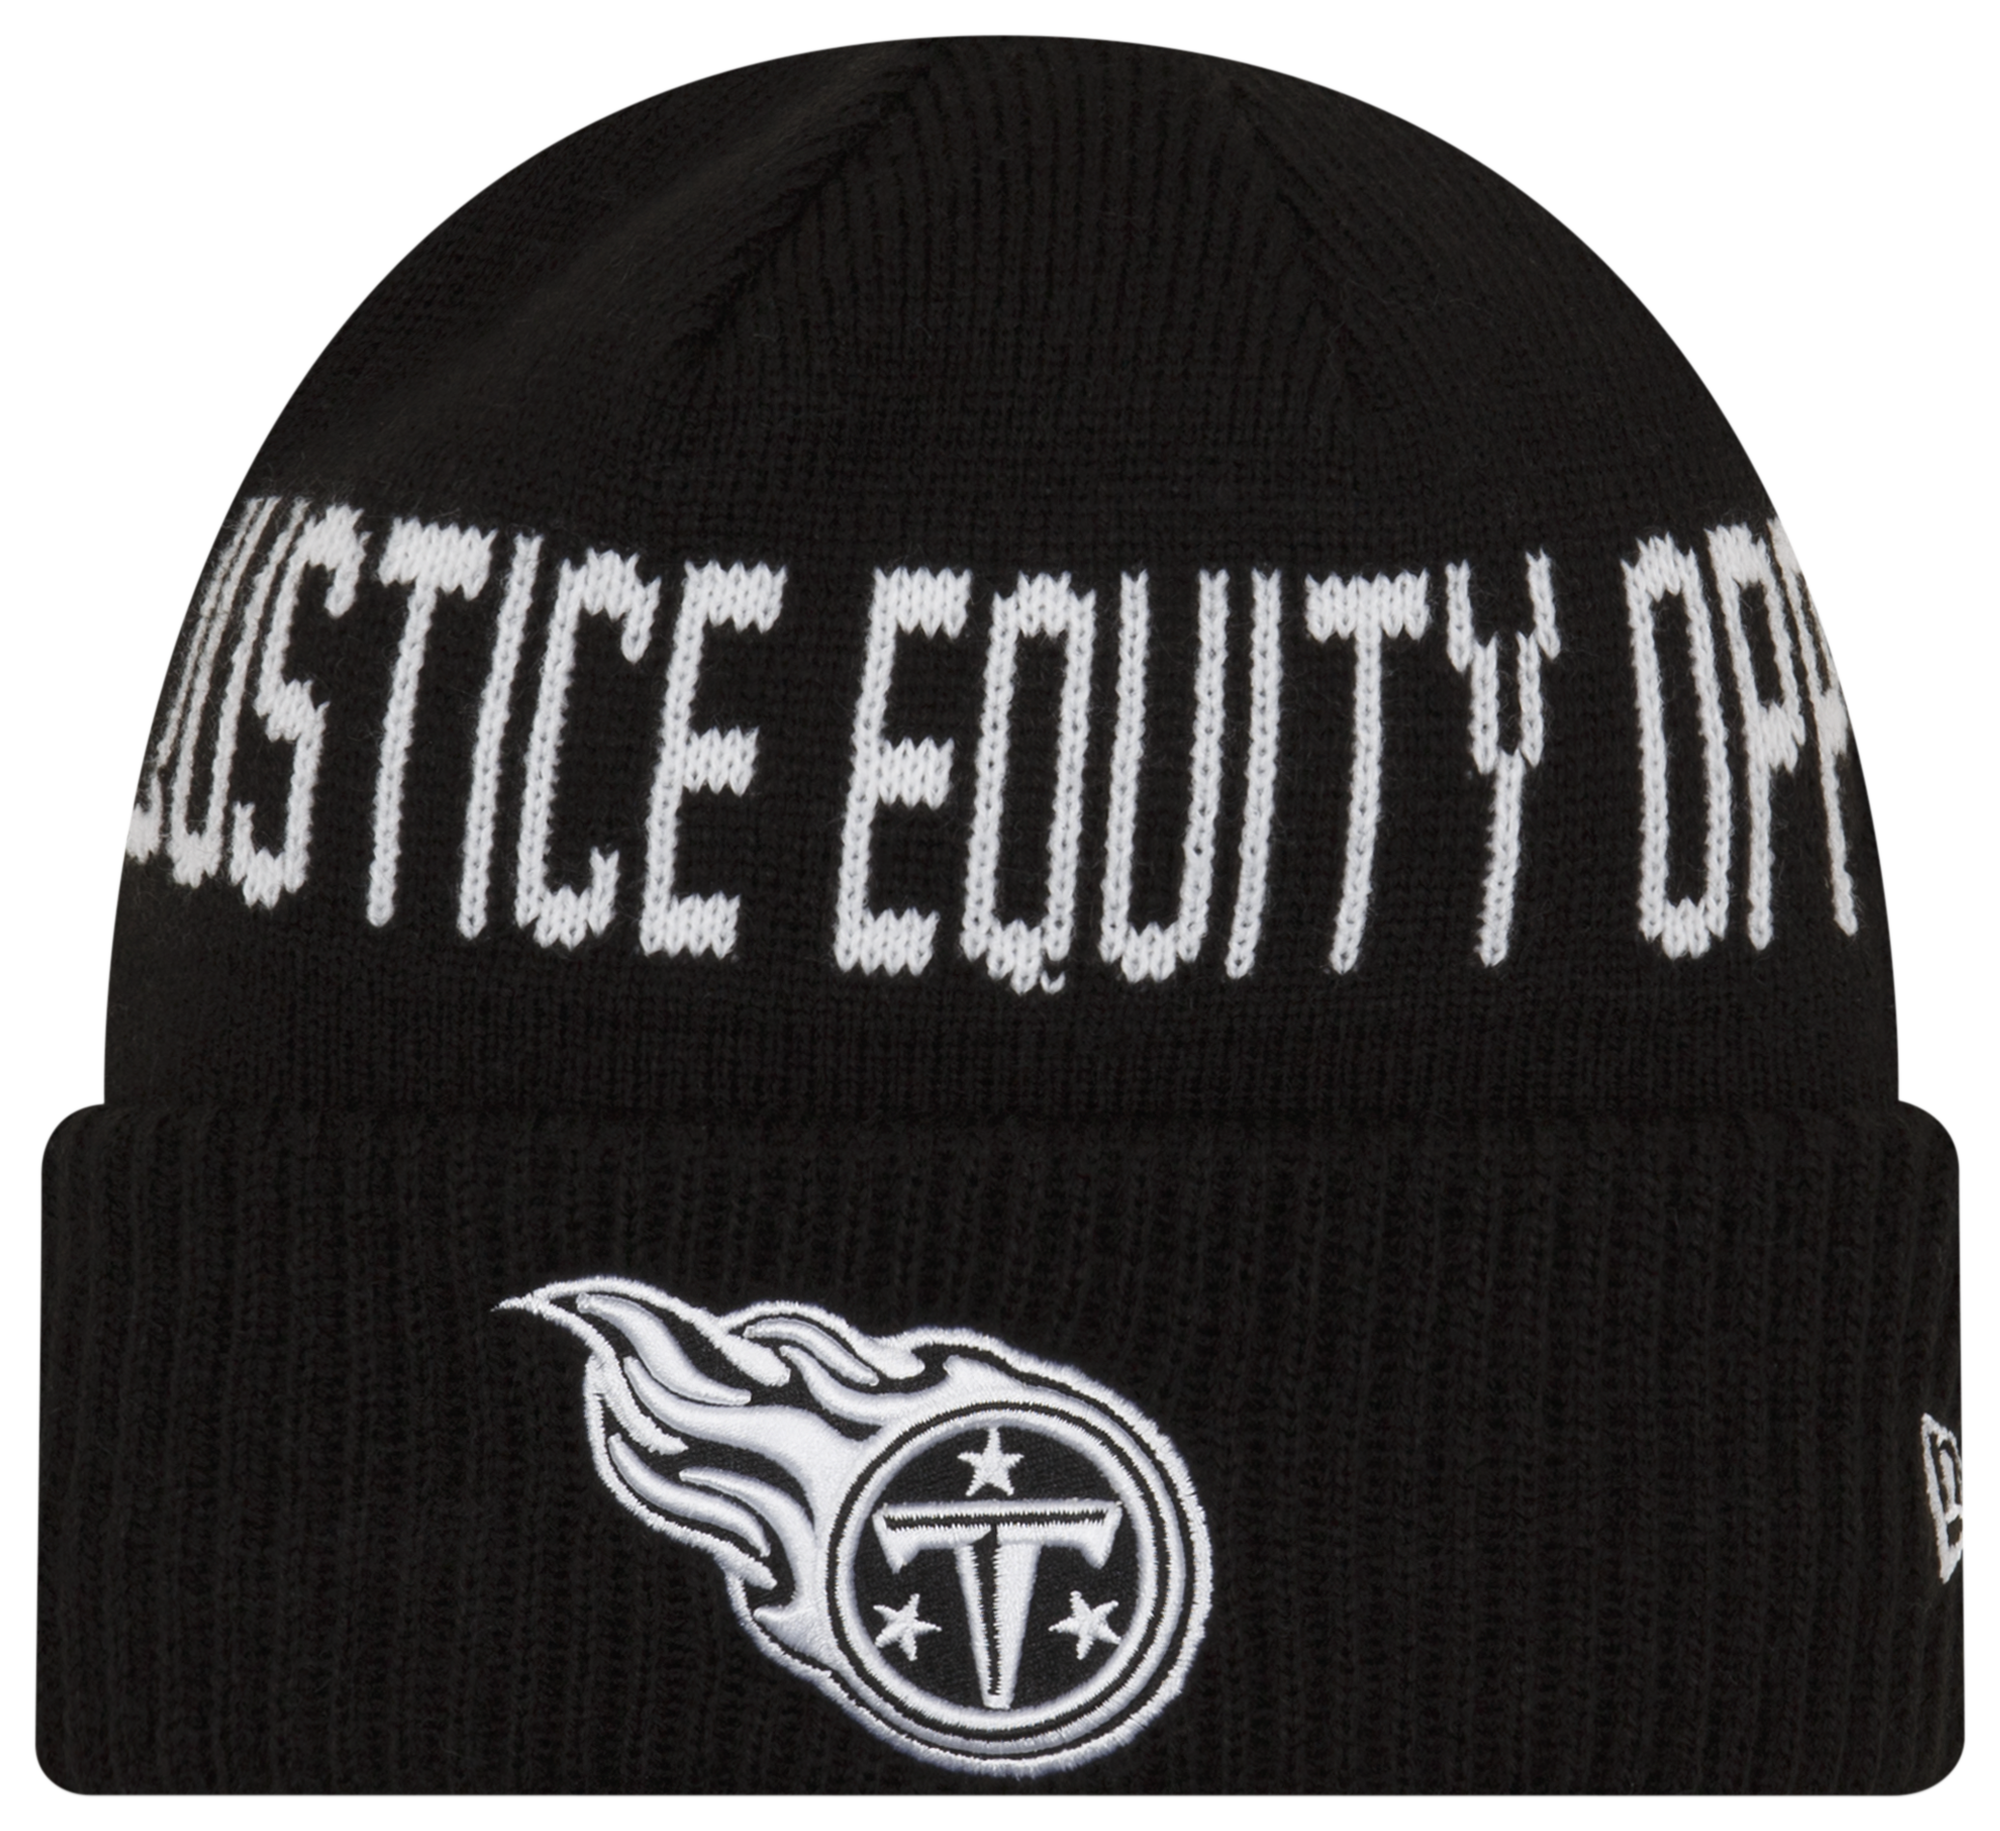 New Era Titans Social Justice Knit Cap